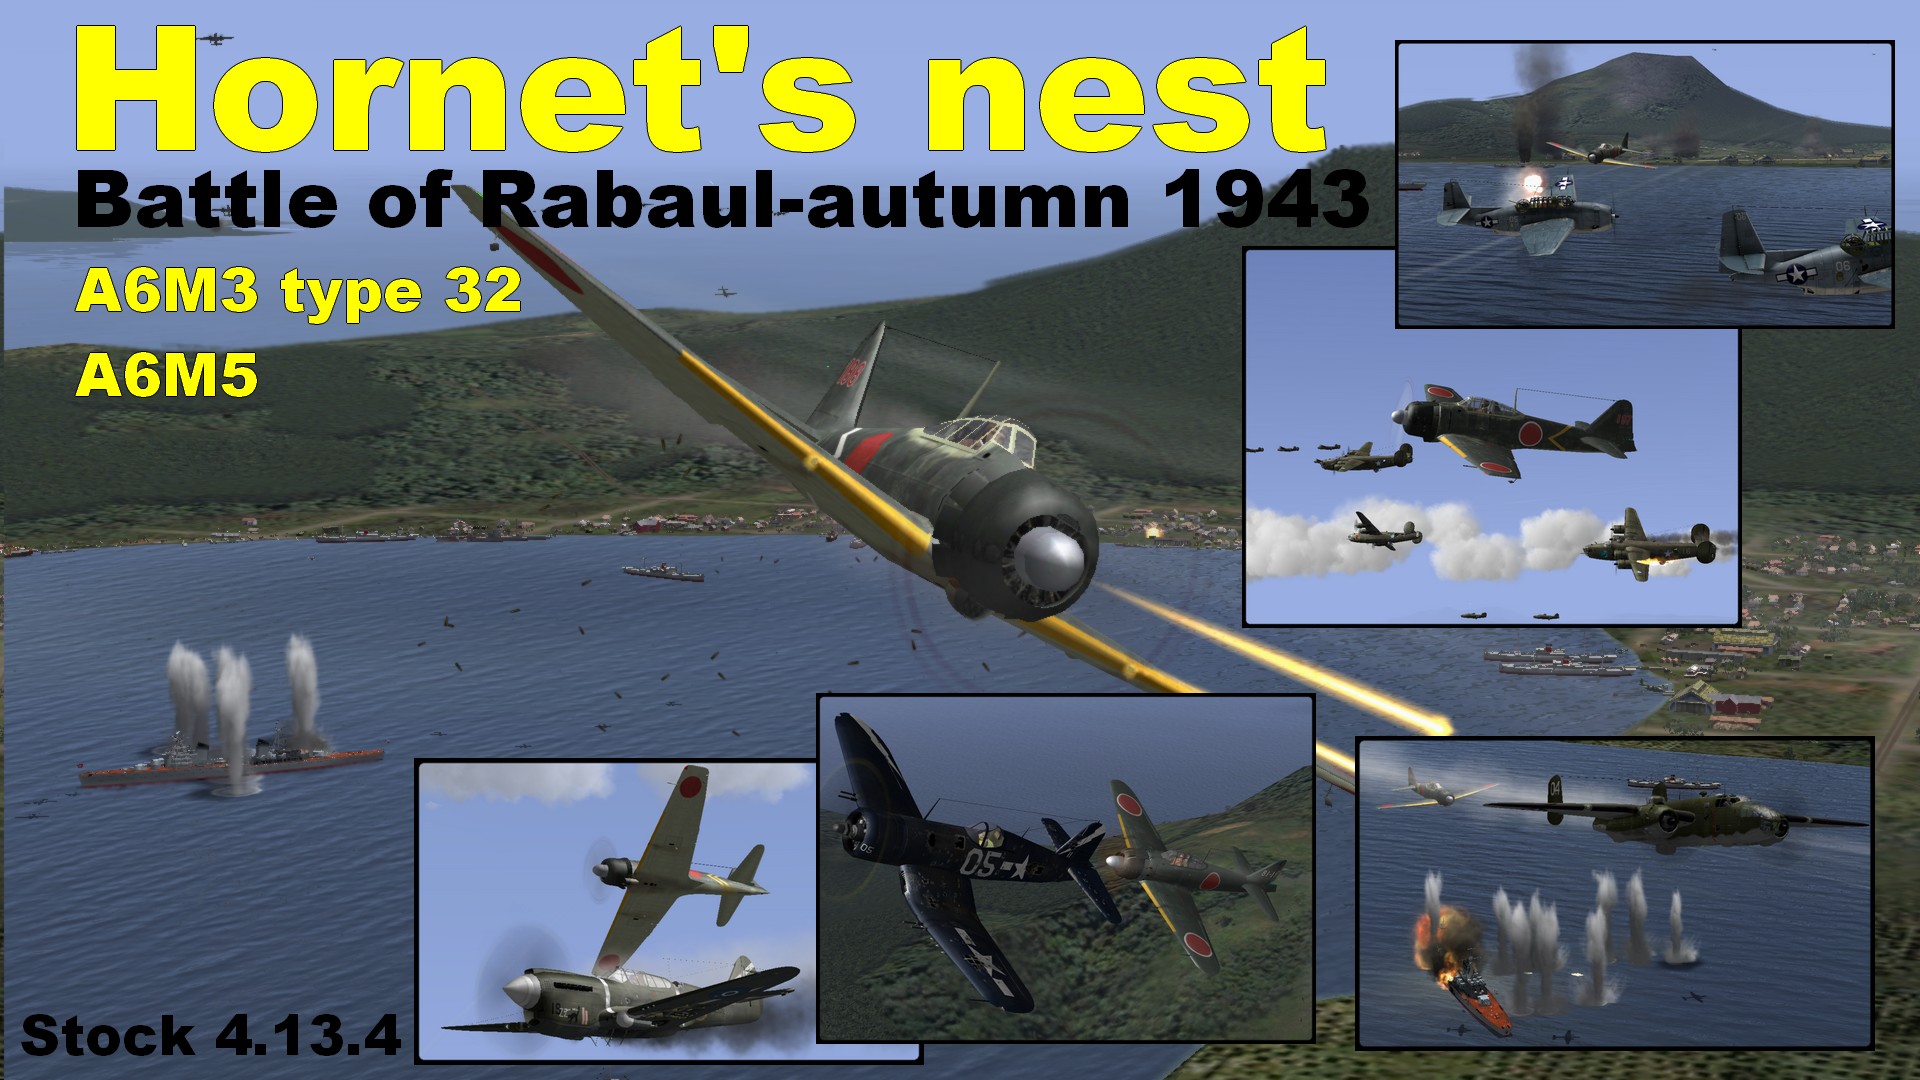 Hornet nest cover